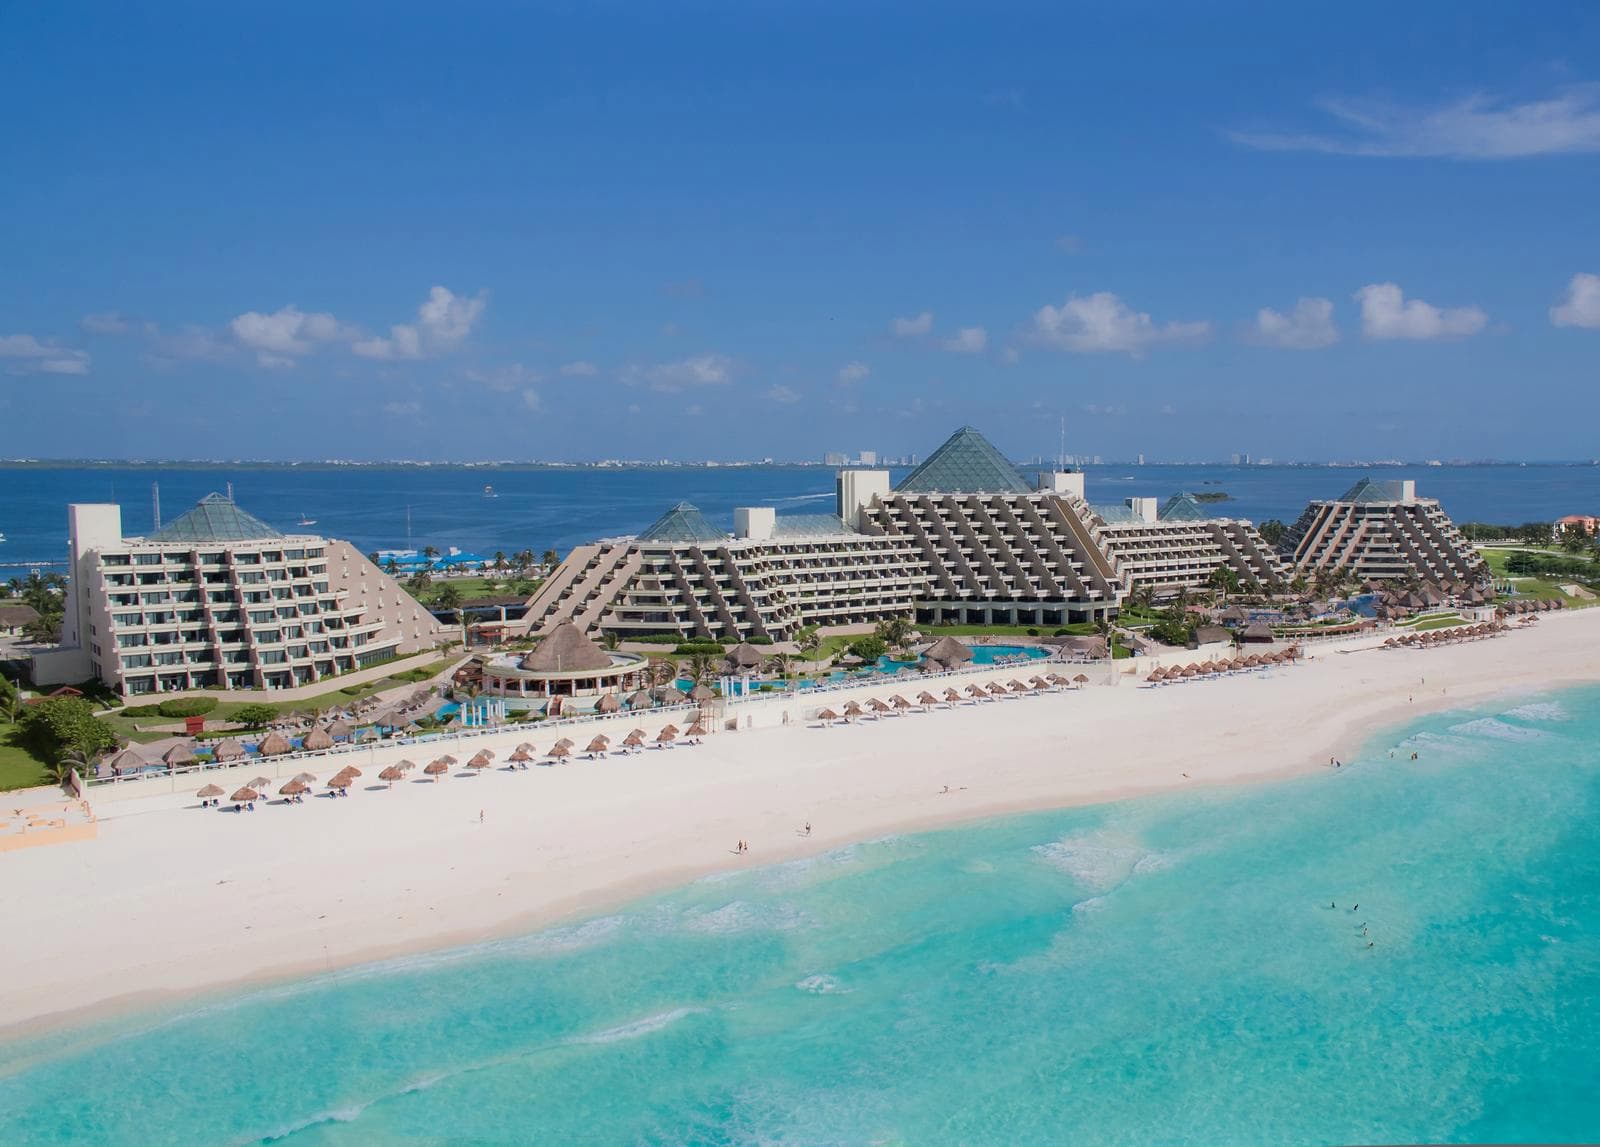 Vista aérea panorámica del hotel Paradisus Cancún - Remodelación de las instalaciones